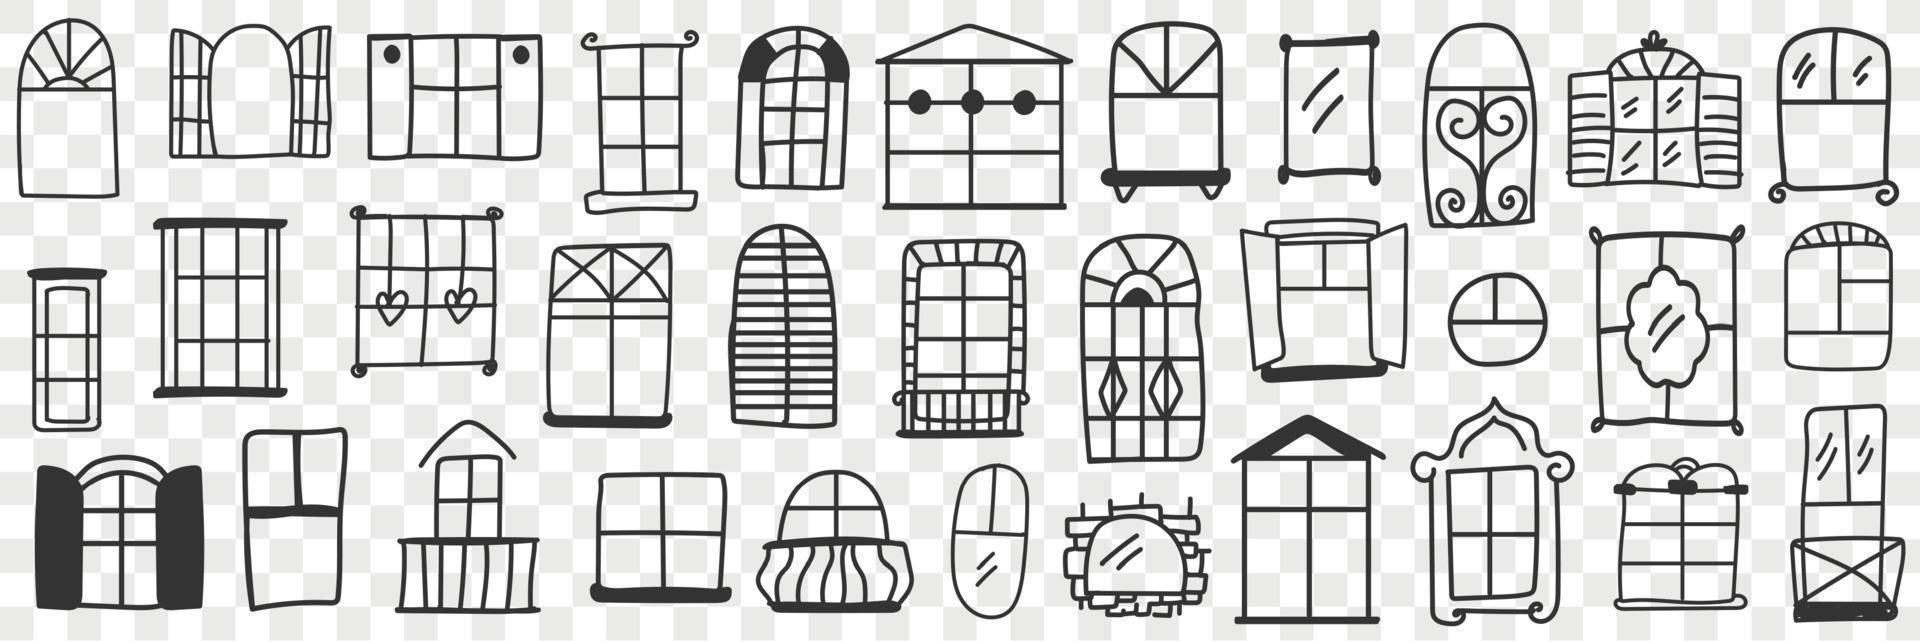 ventanas y marcos garabatear colocar. colección de mano dibujado varios formas y formas de ventanas para edificios con cerrado o abierto persianas aislado en transparente antecedentes vector